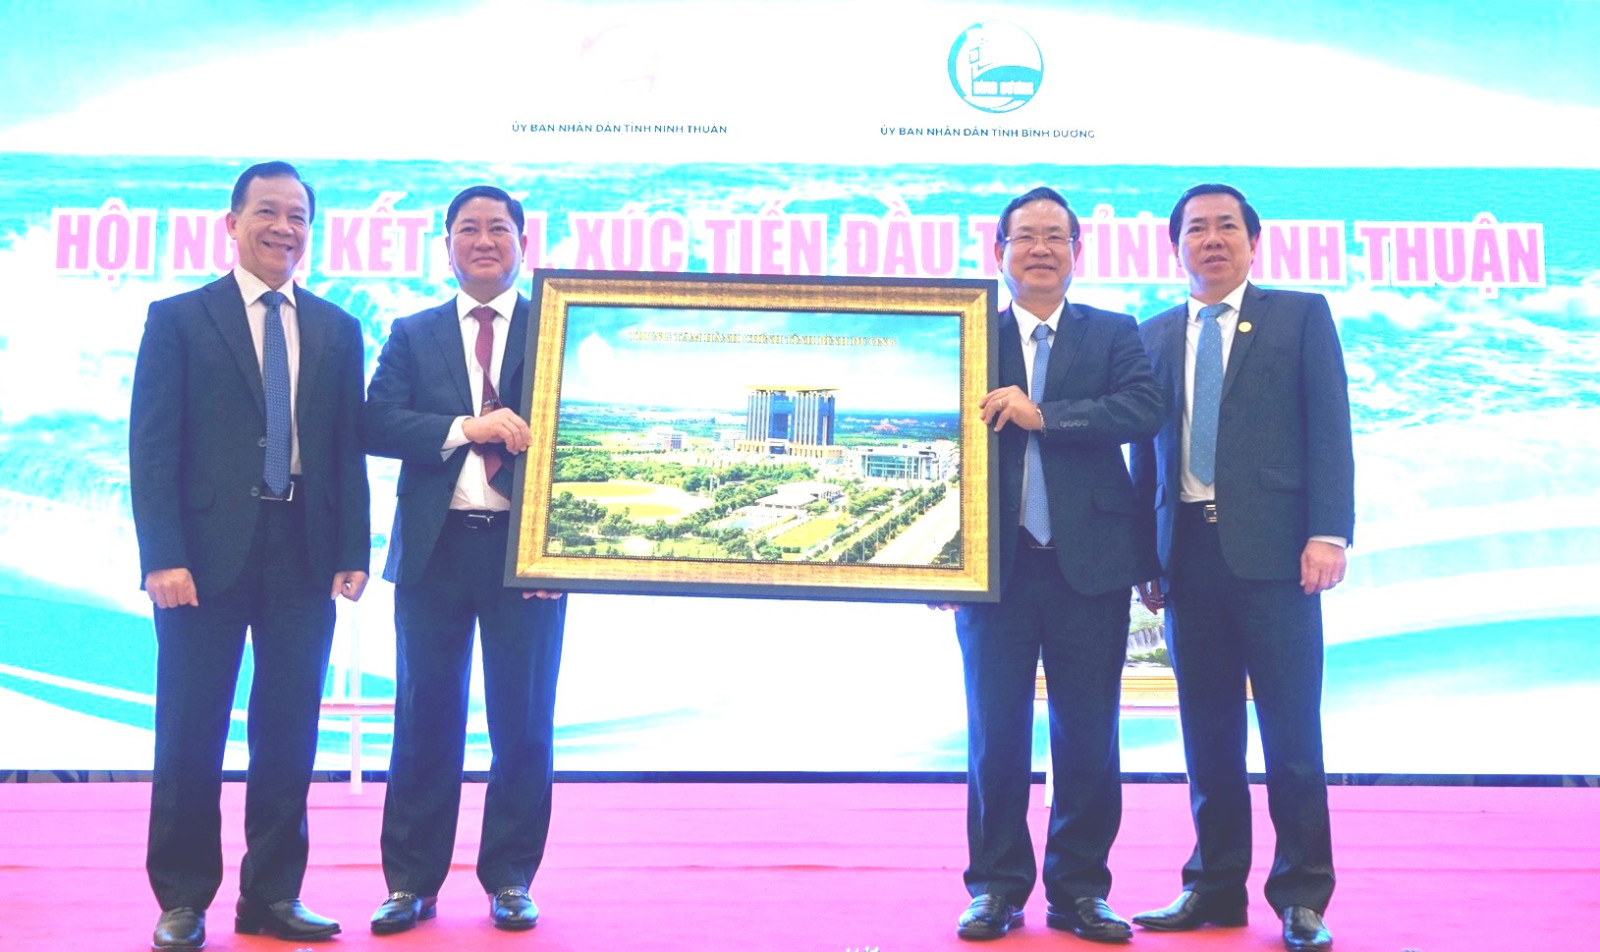 Lãnh đạo tỉnh Bình Dương tặng bức tranh cho tỉnh Ninh Thuận